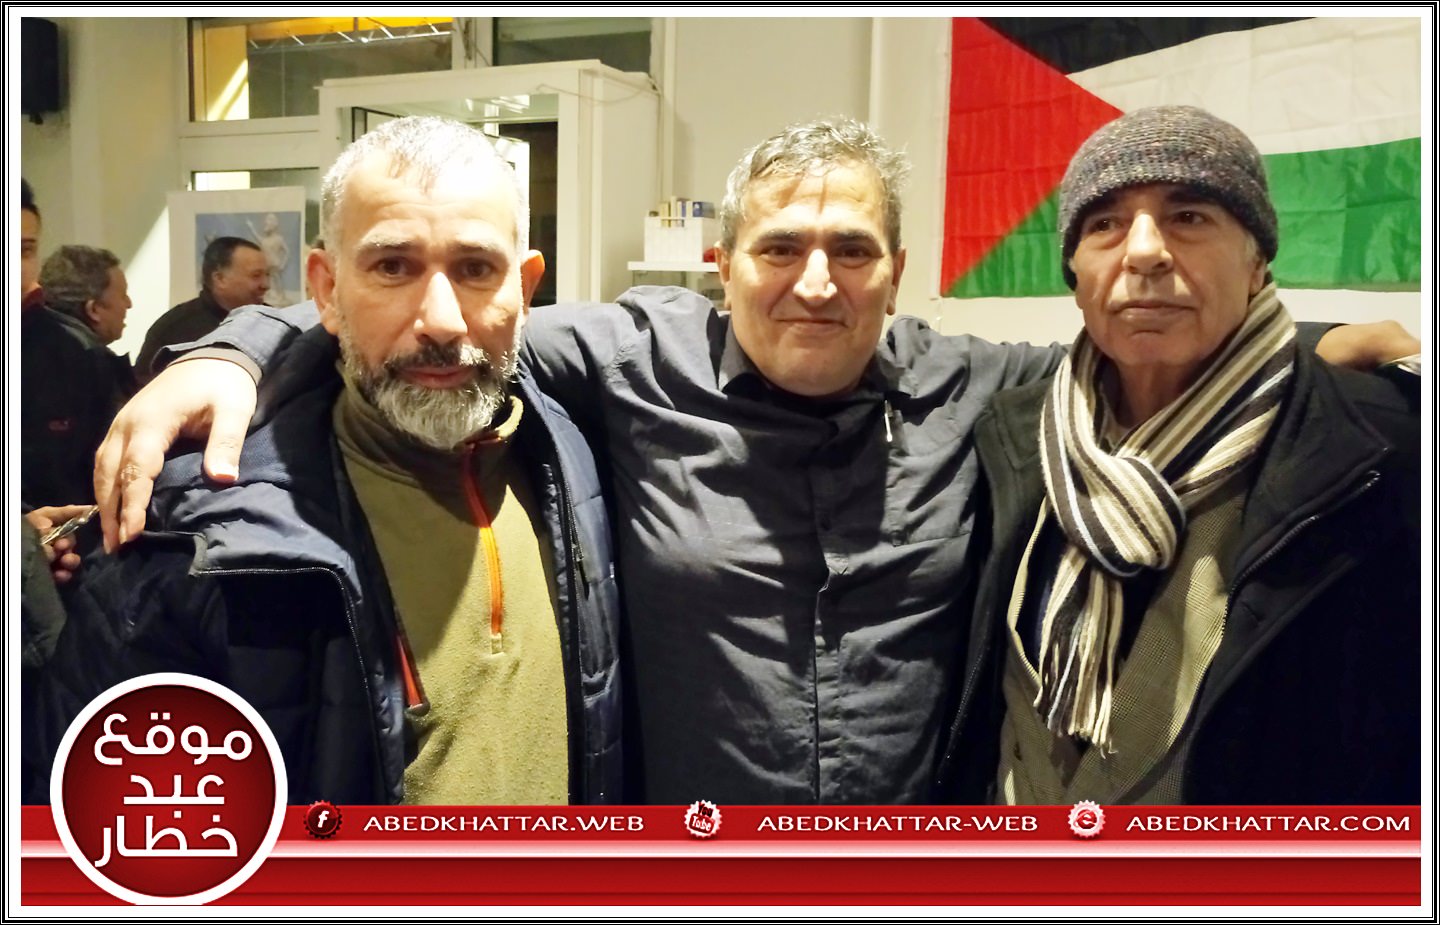 ندوة الكاتب الفلسطيني خالد بركات حول رؤية الجبهة الشعبية لتحرير فلسطين